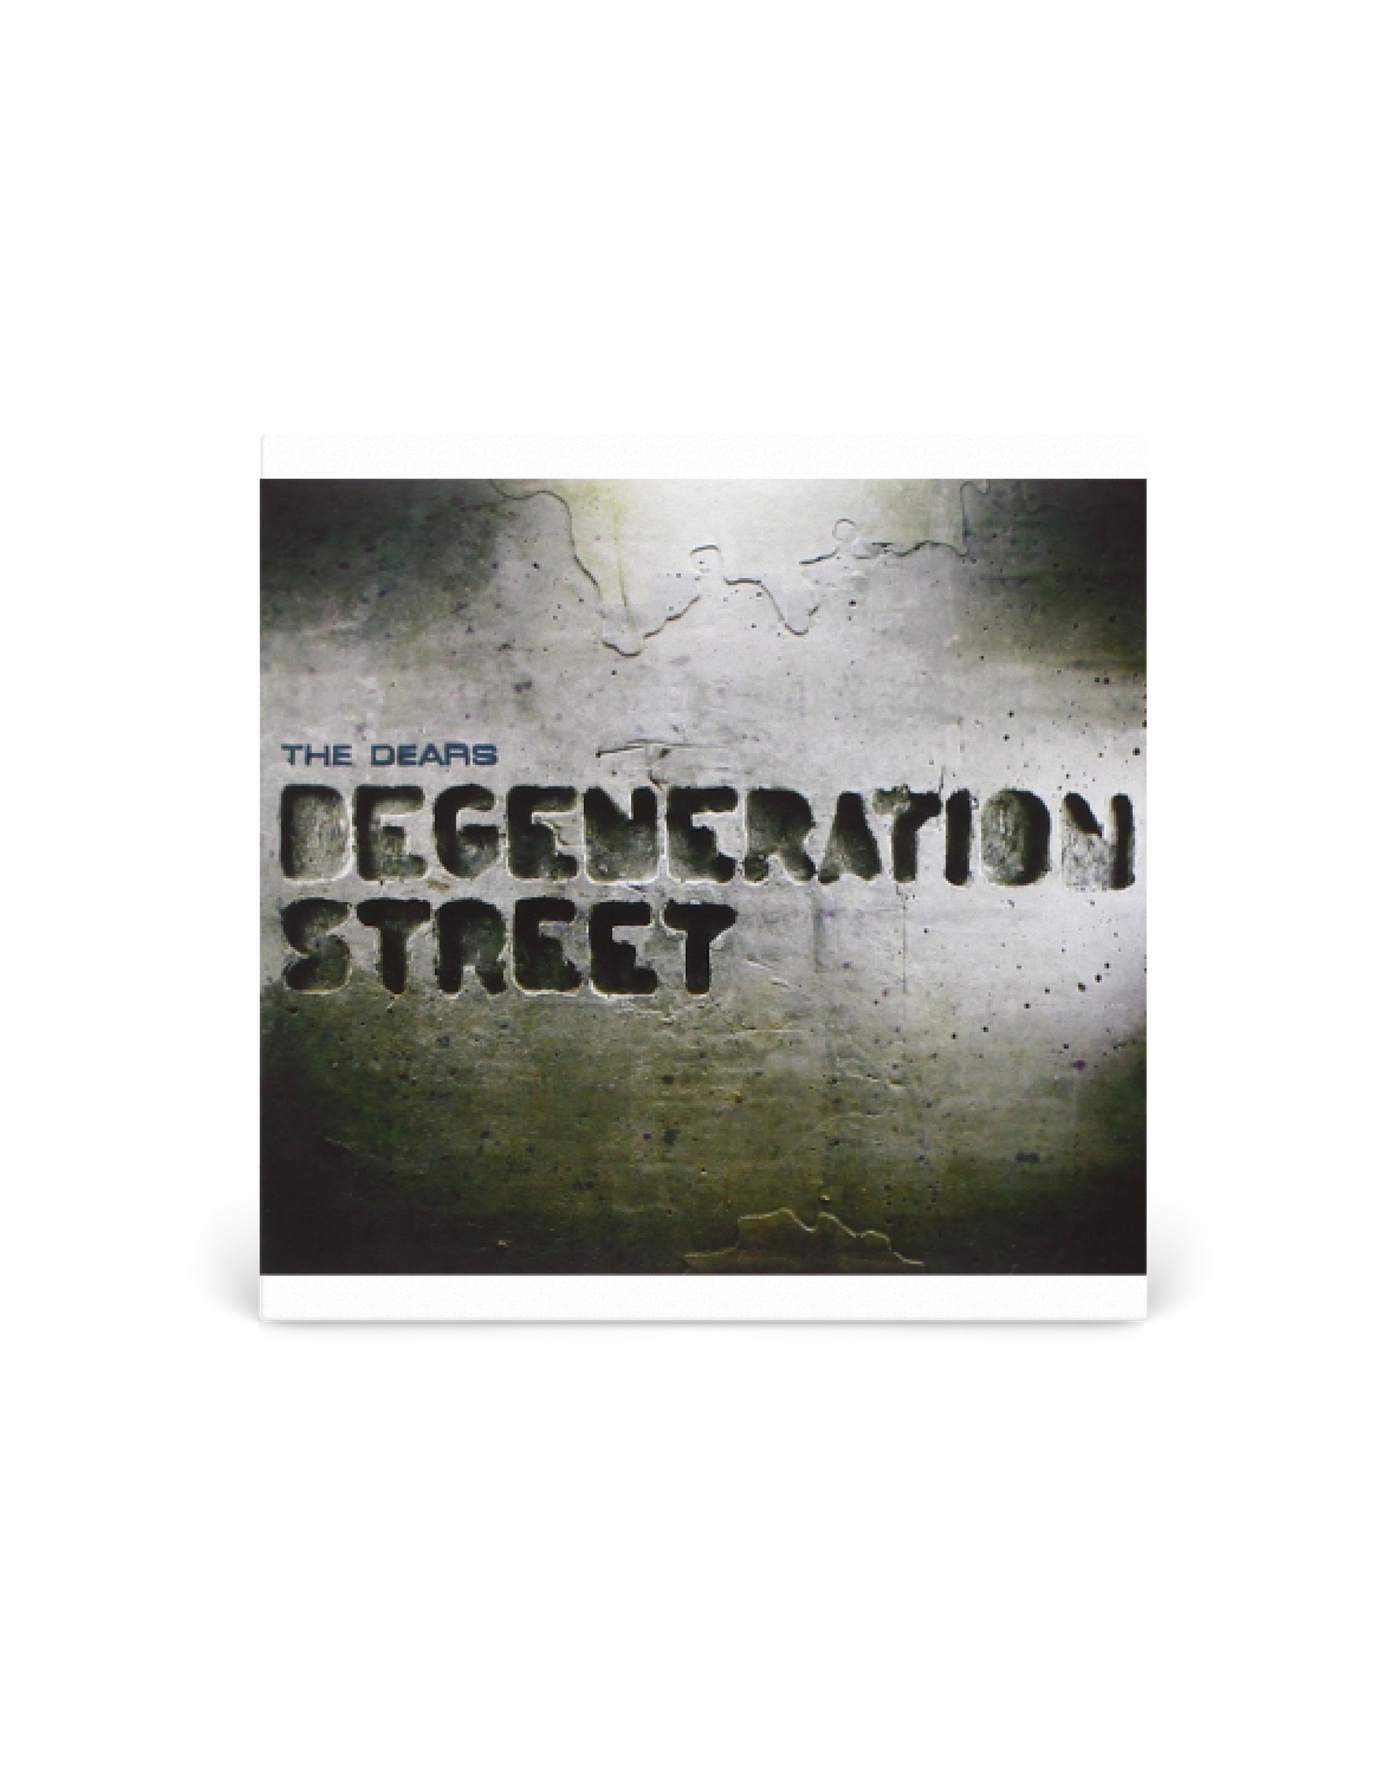 CD - The Dears Degeneration Street